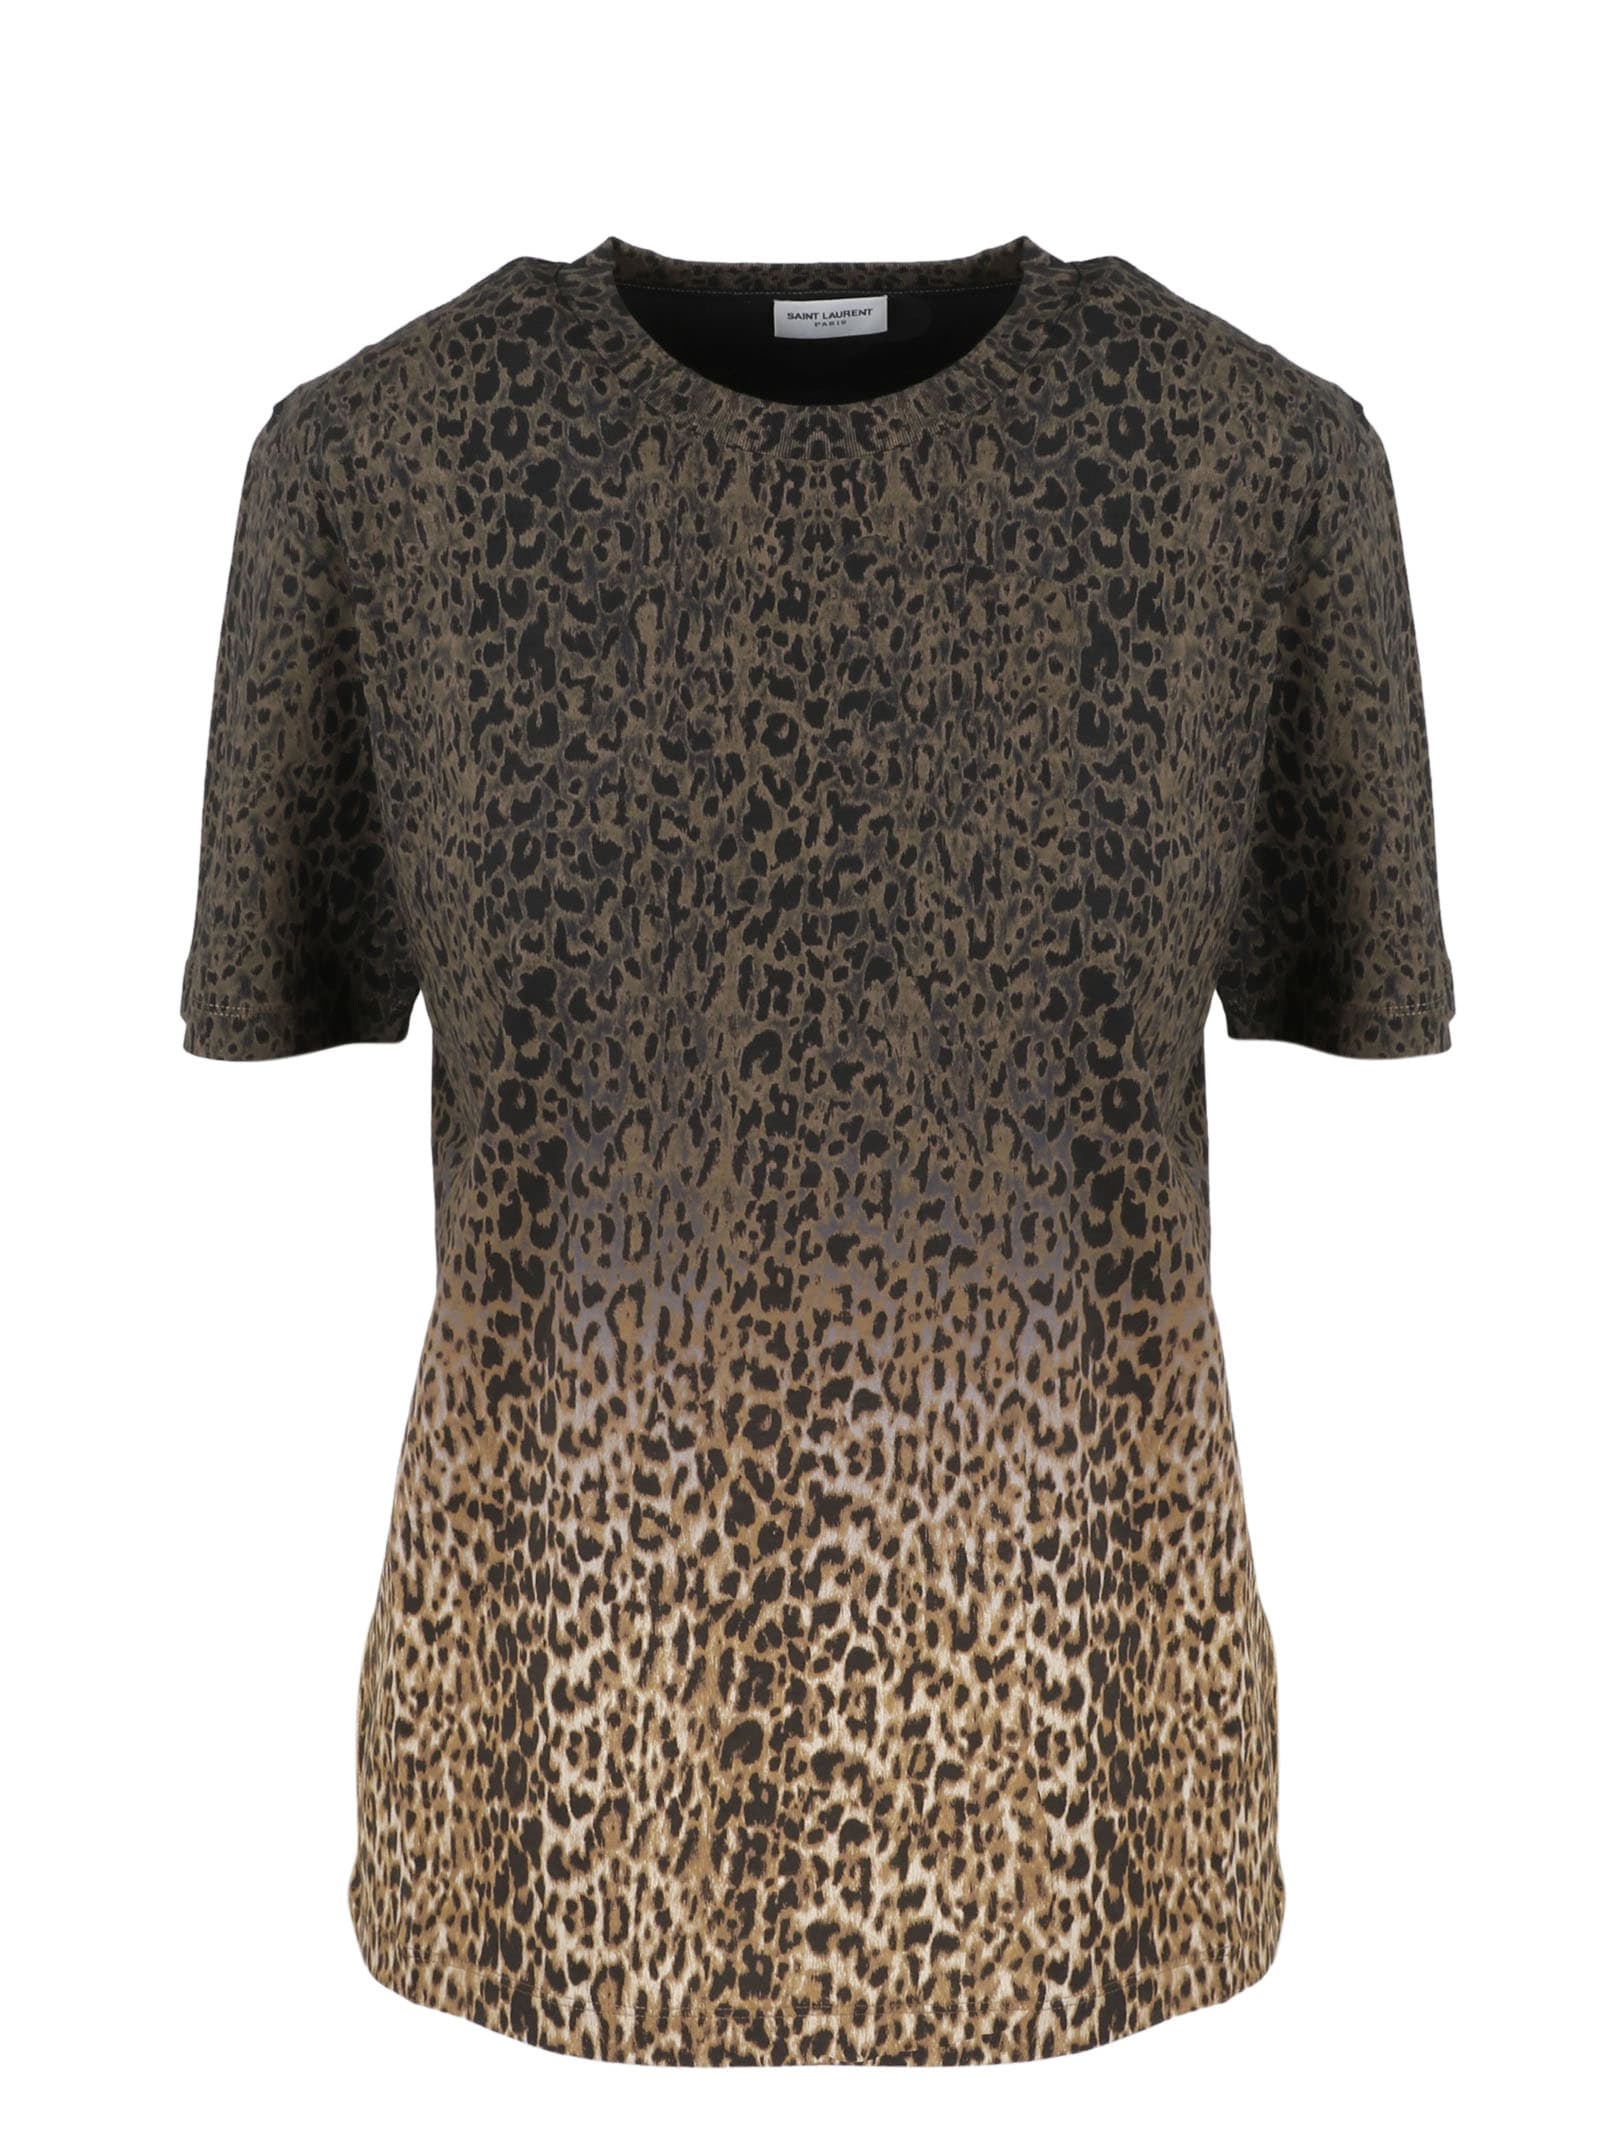 Saint Laurent Leopard Tie-dye T-shirt